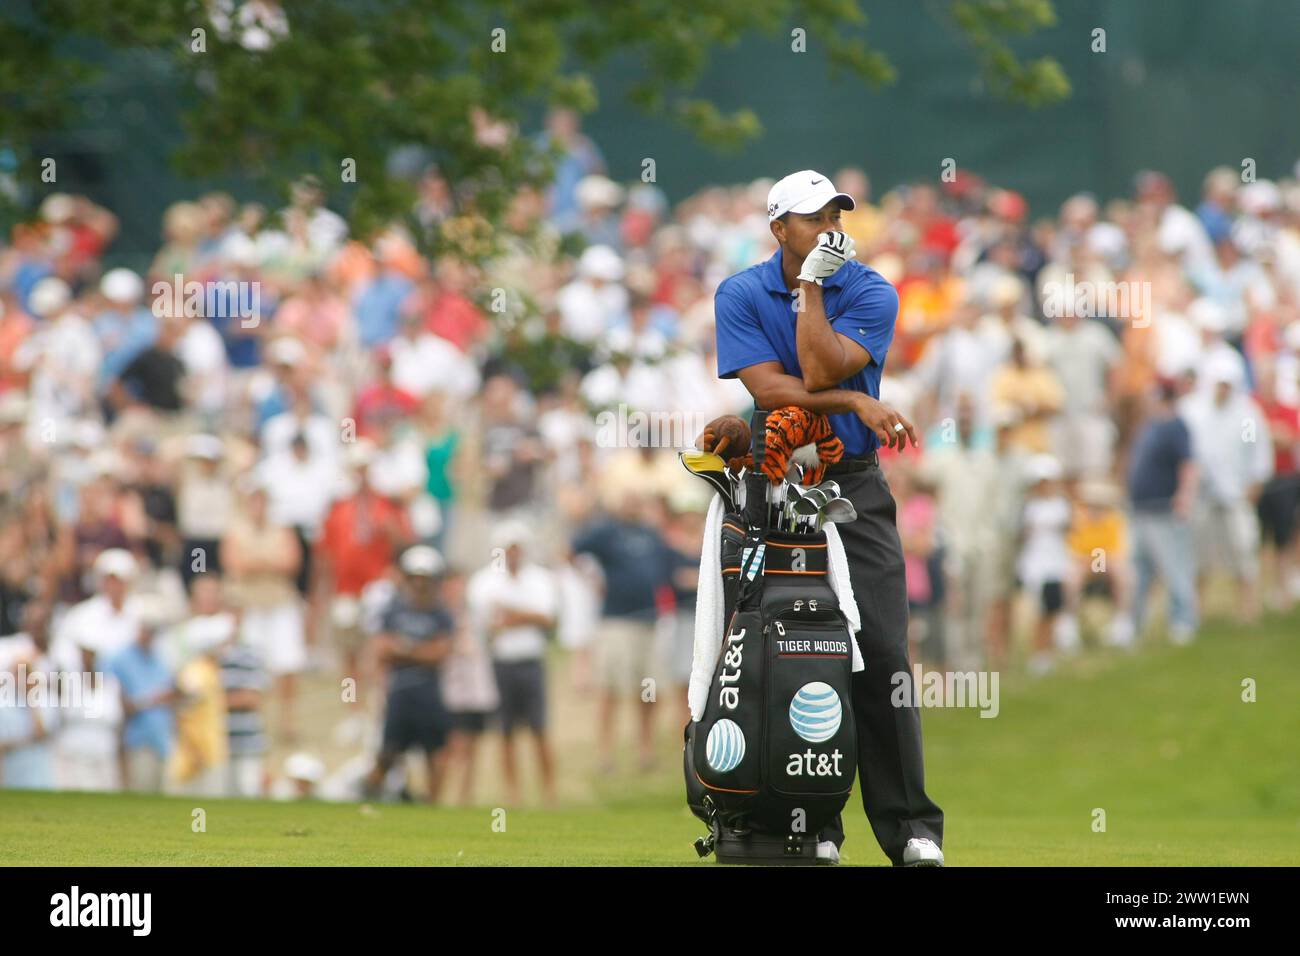 Tiger Woods au US PGA Championship. Hazeltine National GC, Chaska, Minnesota, États-Unis. Août 2009. Le plus grand golfeur de tous les temps. Tiger Woods Banque D'Images